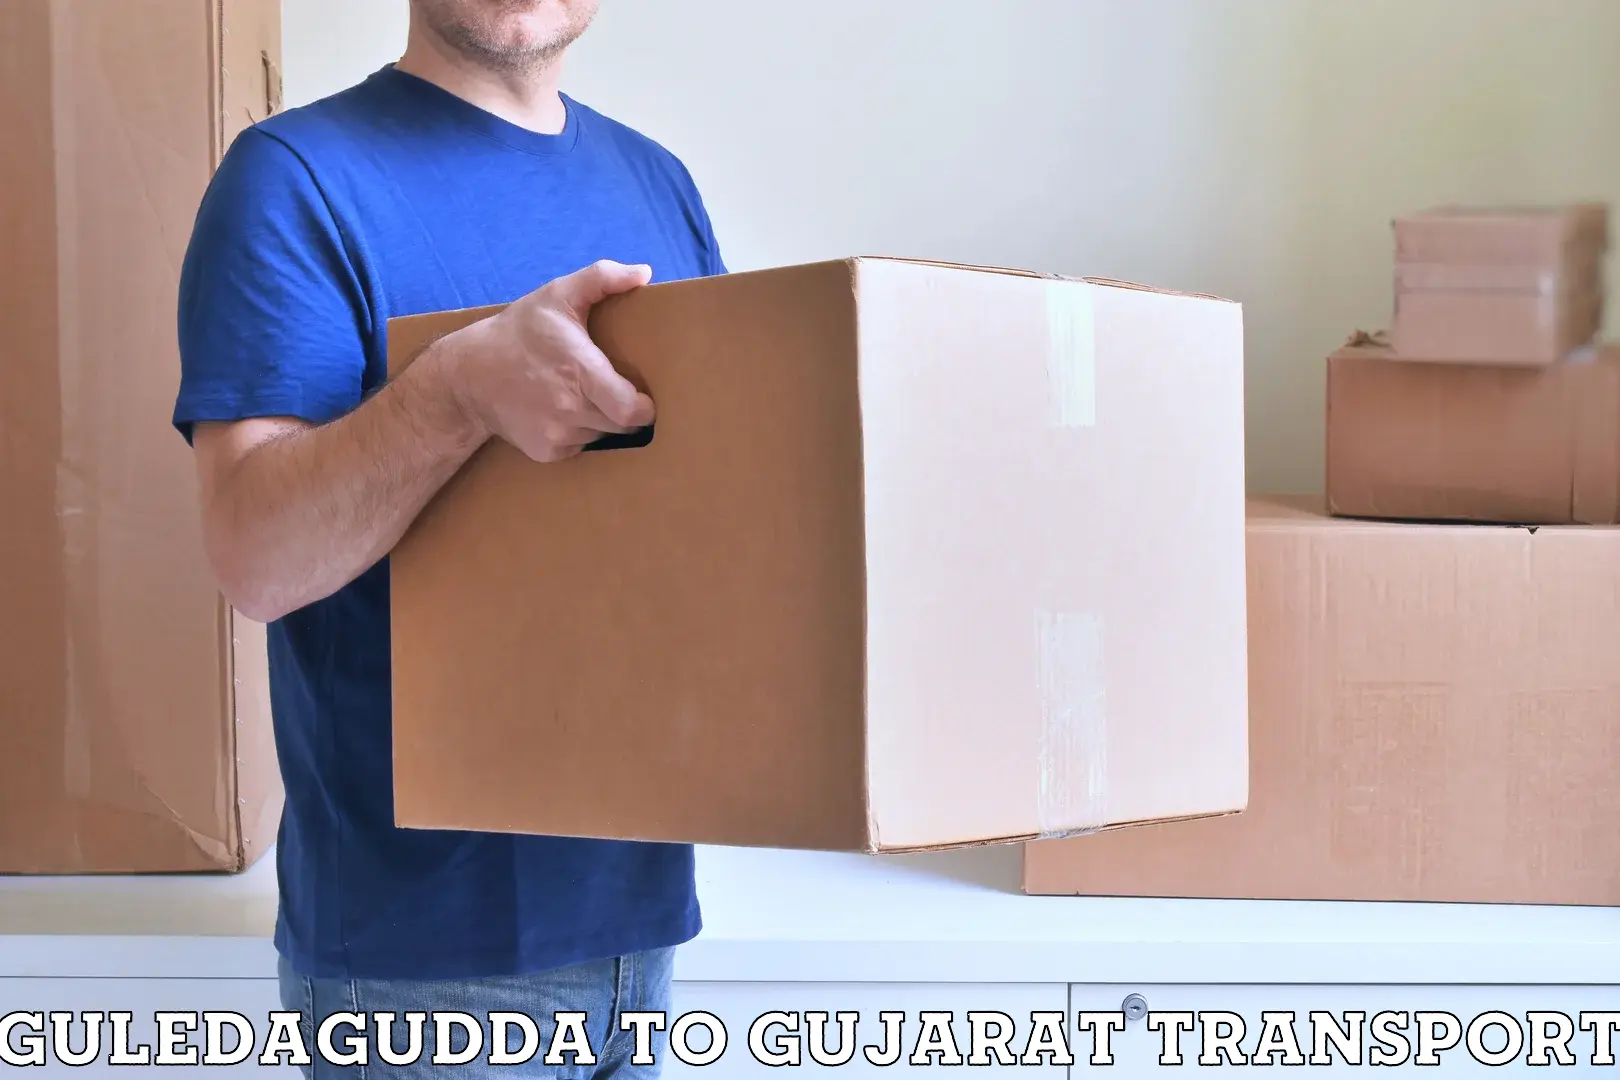 Daily transport service Guledagudda to Matar